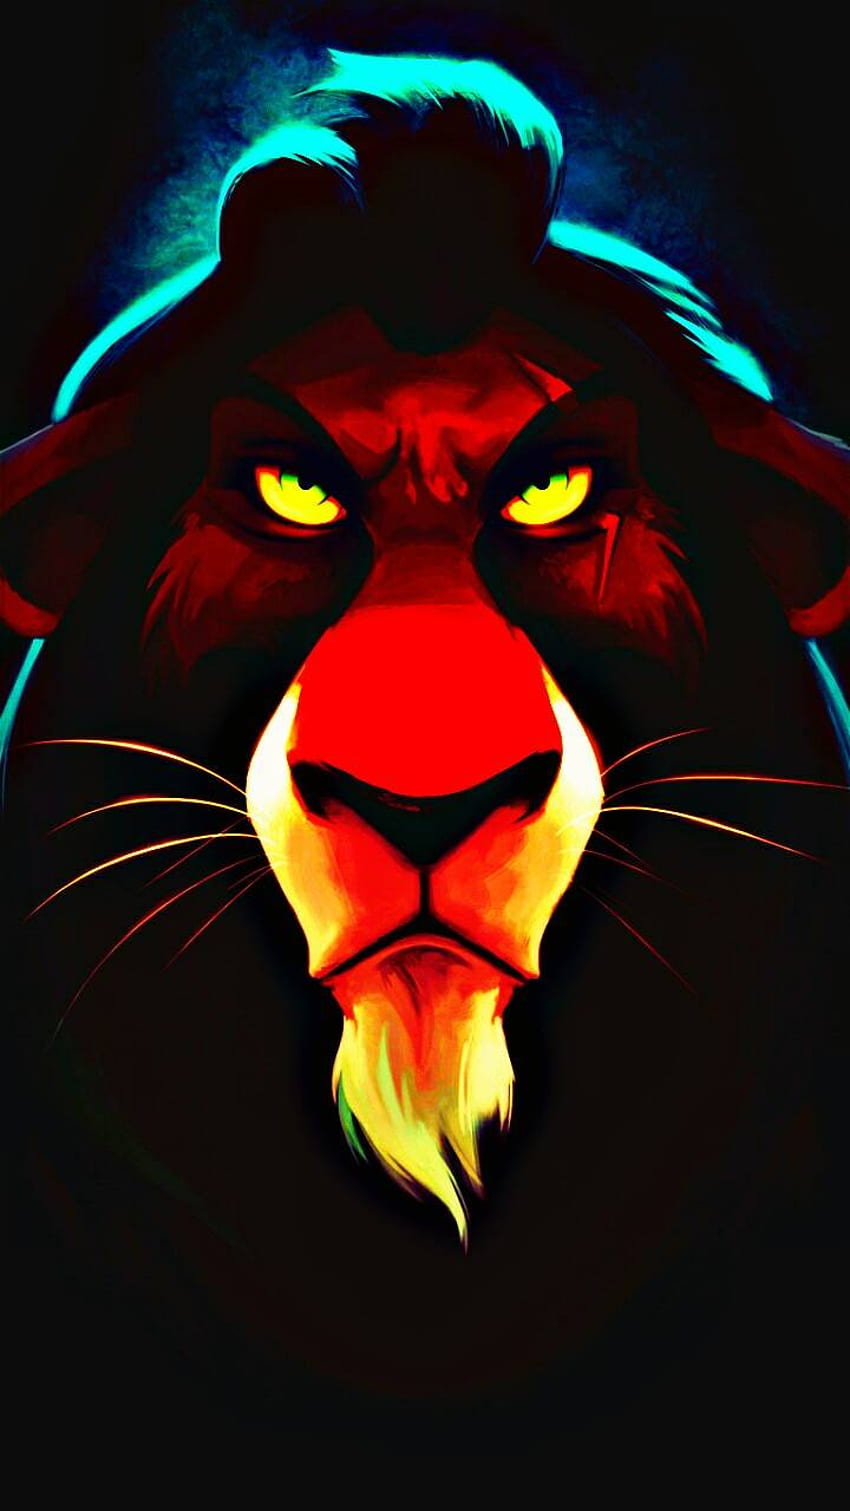 lion king scar wallpaper hd